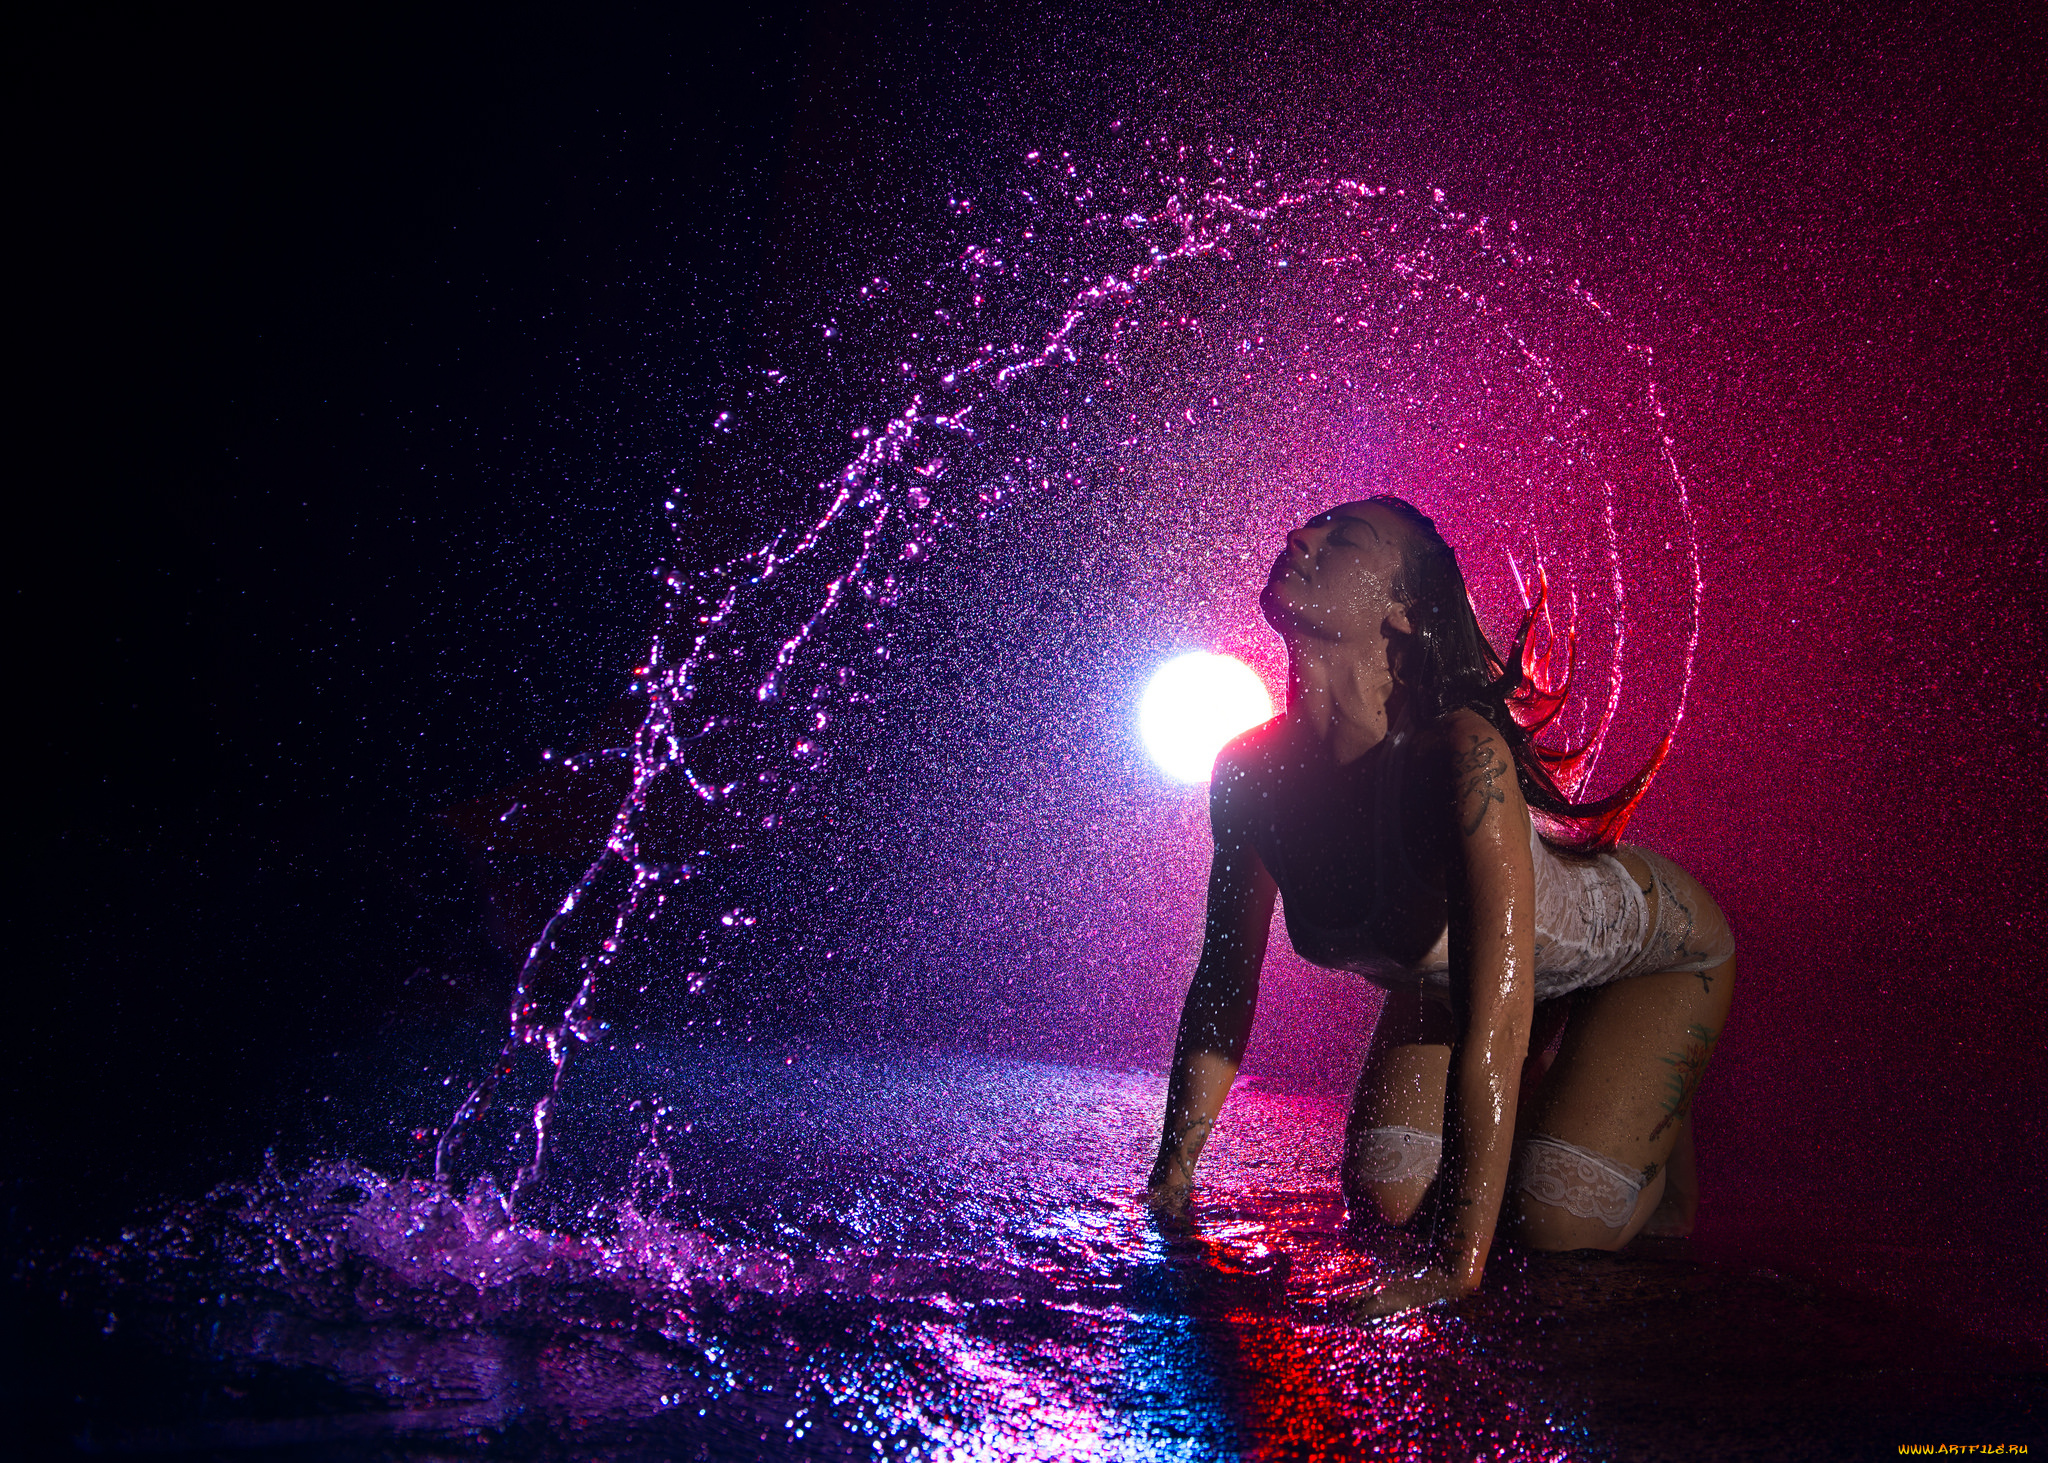 Бесконечно можно смотреть на огонь воду и обнаженную тайскую девушку